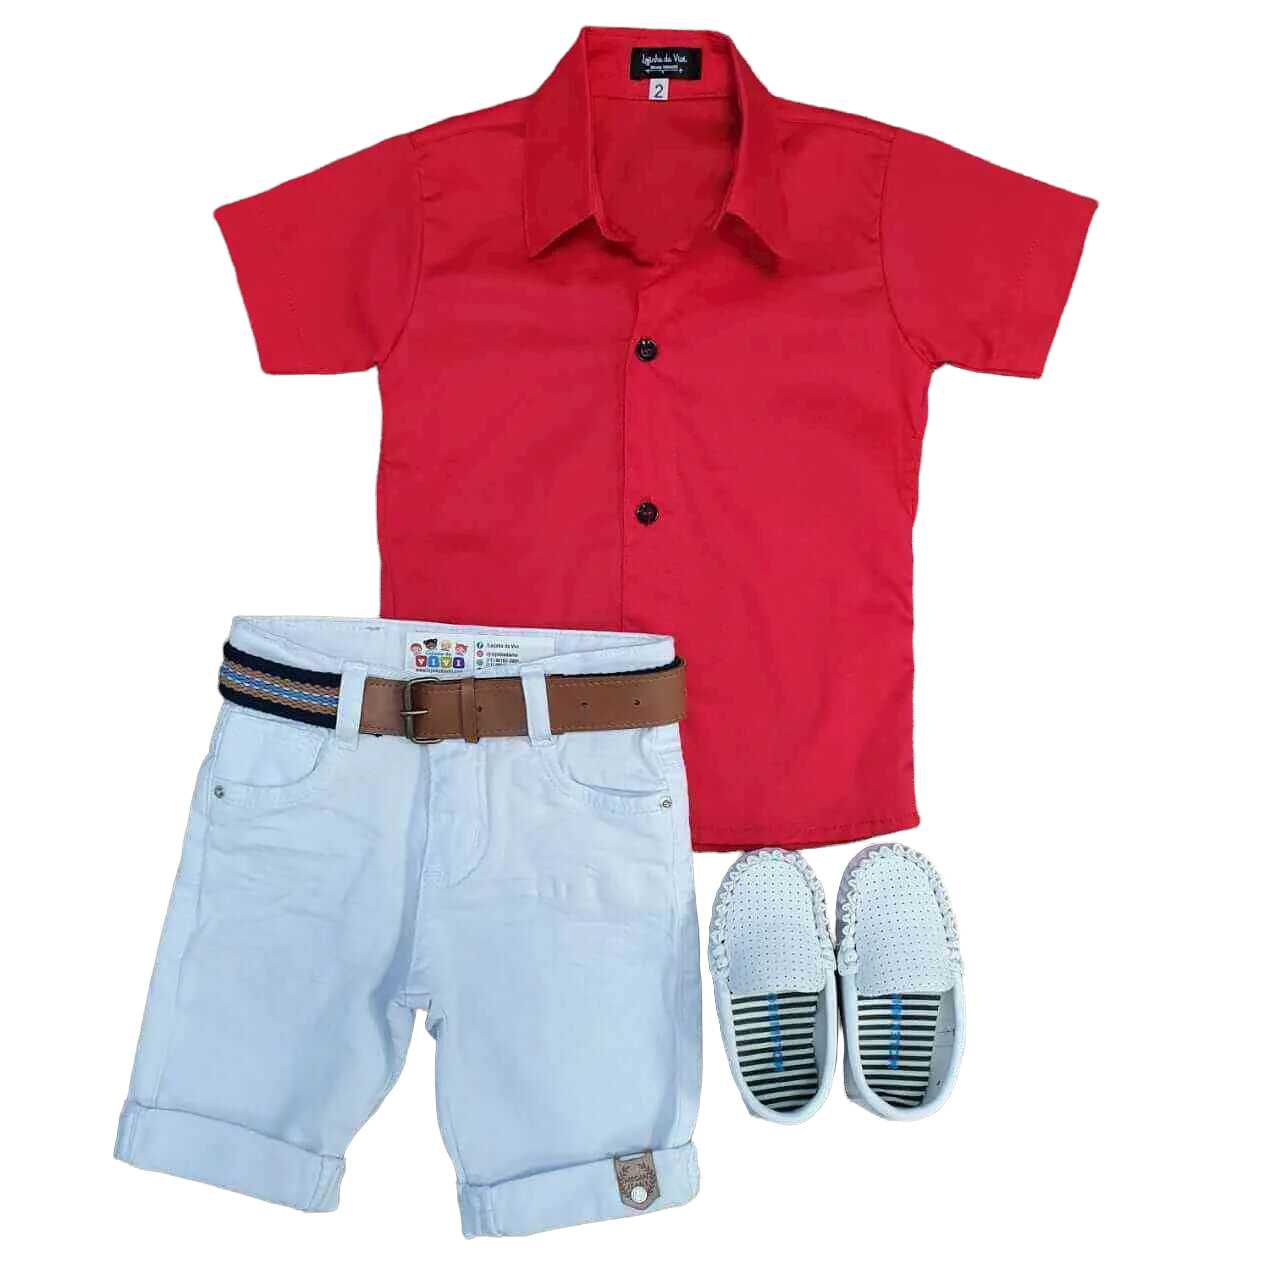 Bermuda Branca com Camisa Vermelha Infantil - Lojinha da Vivi